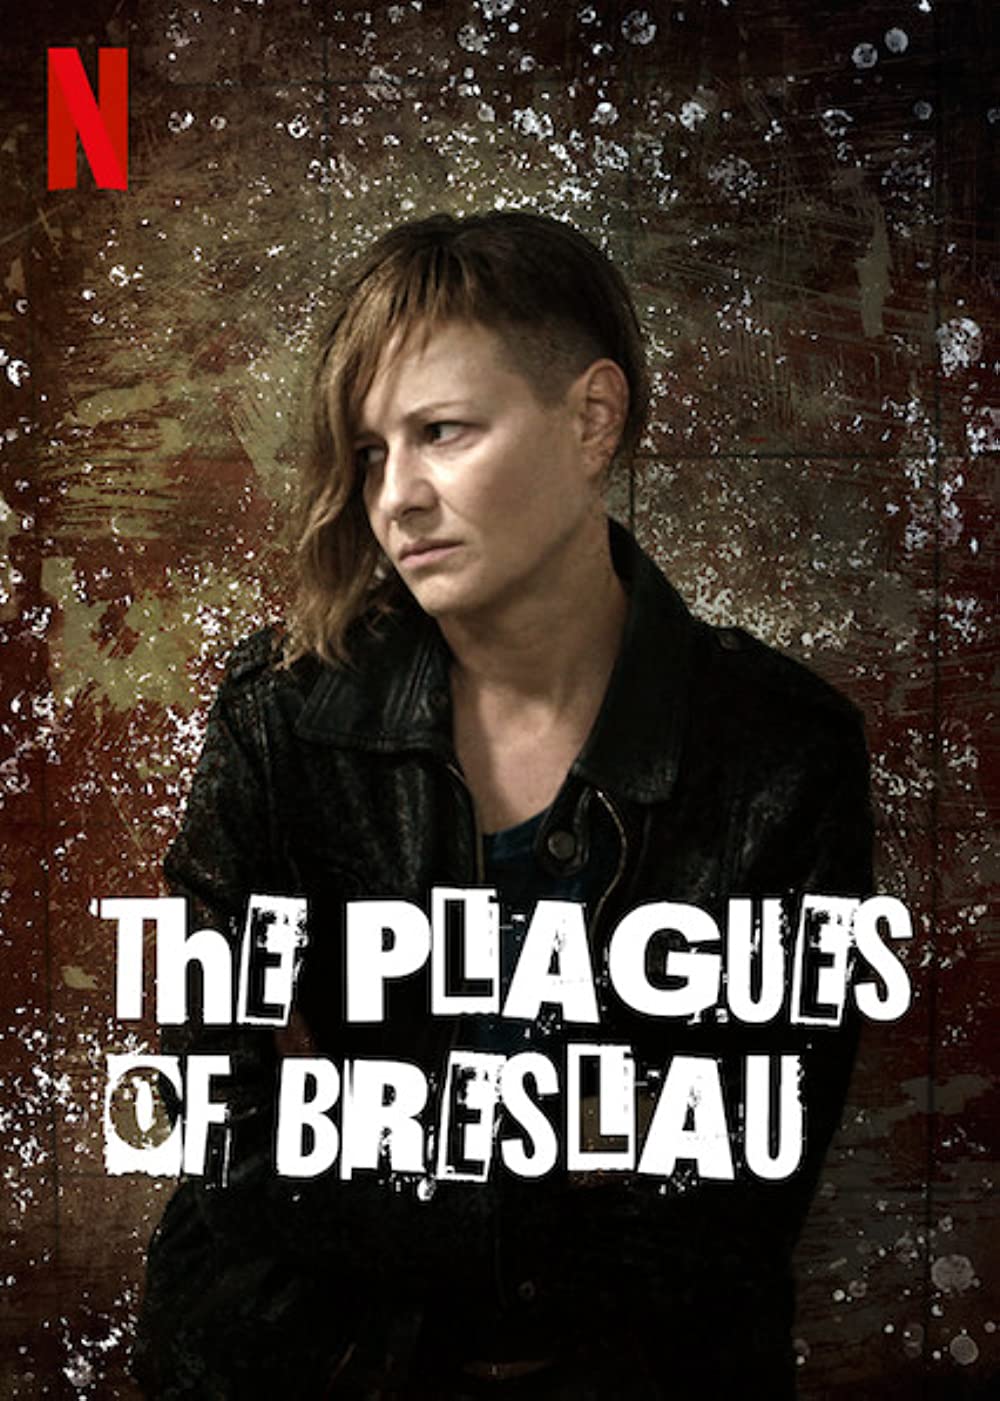 Plagues of Breslau